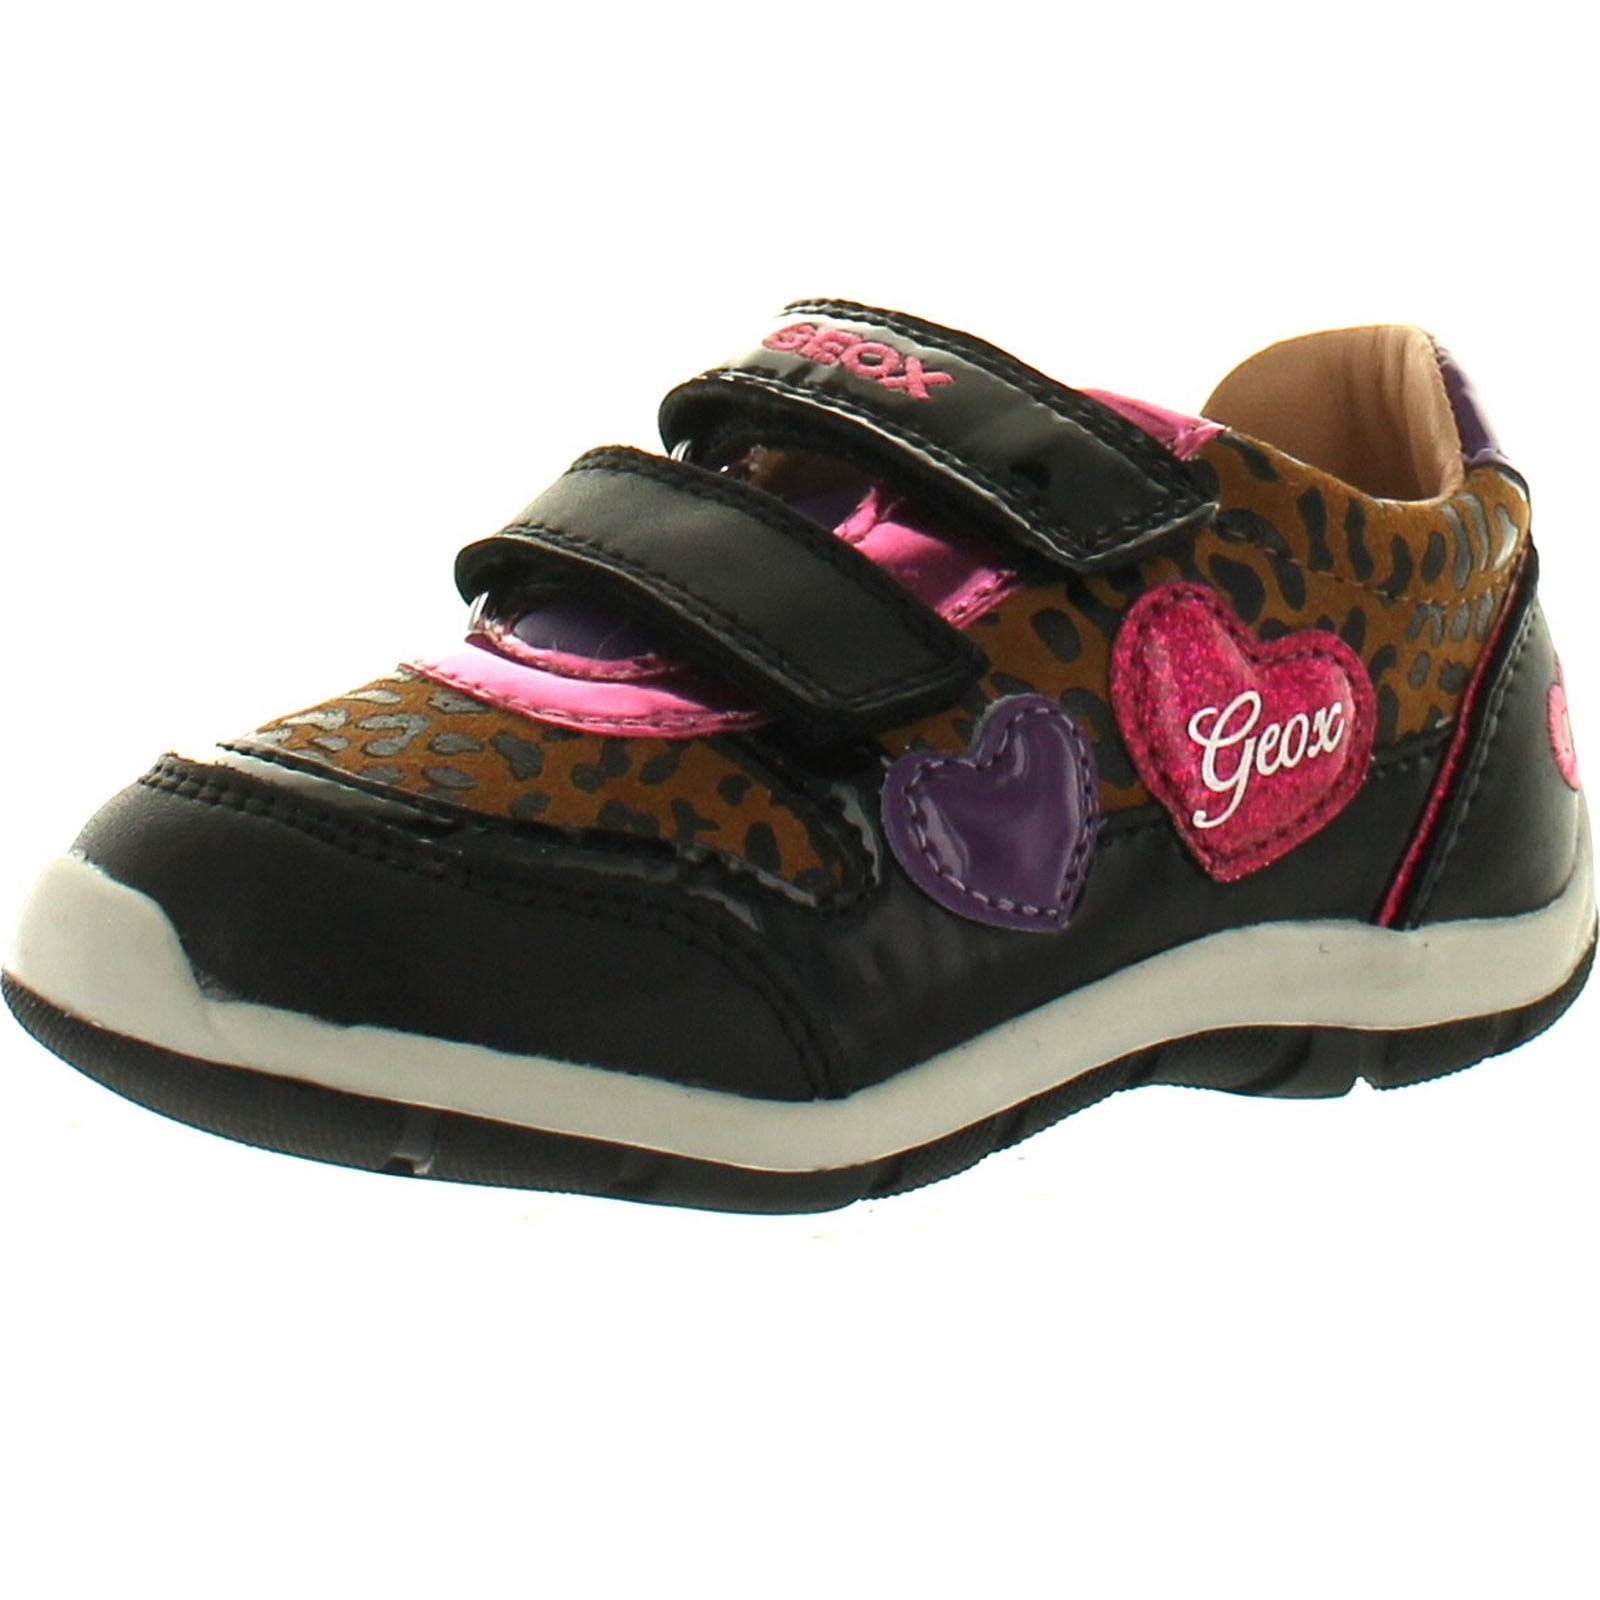 GEOX Little Girls Shaax Leopard Velcro Sneakers, Black/Silver, 25 - Walmart.com